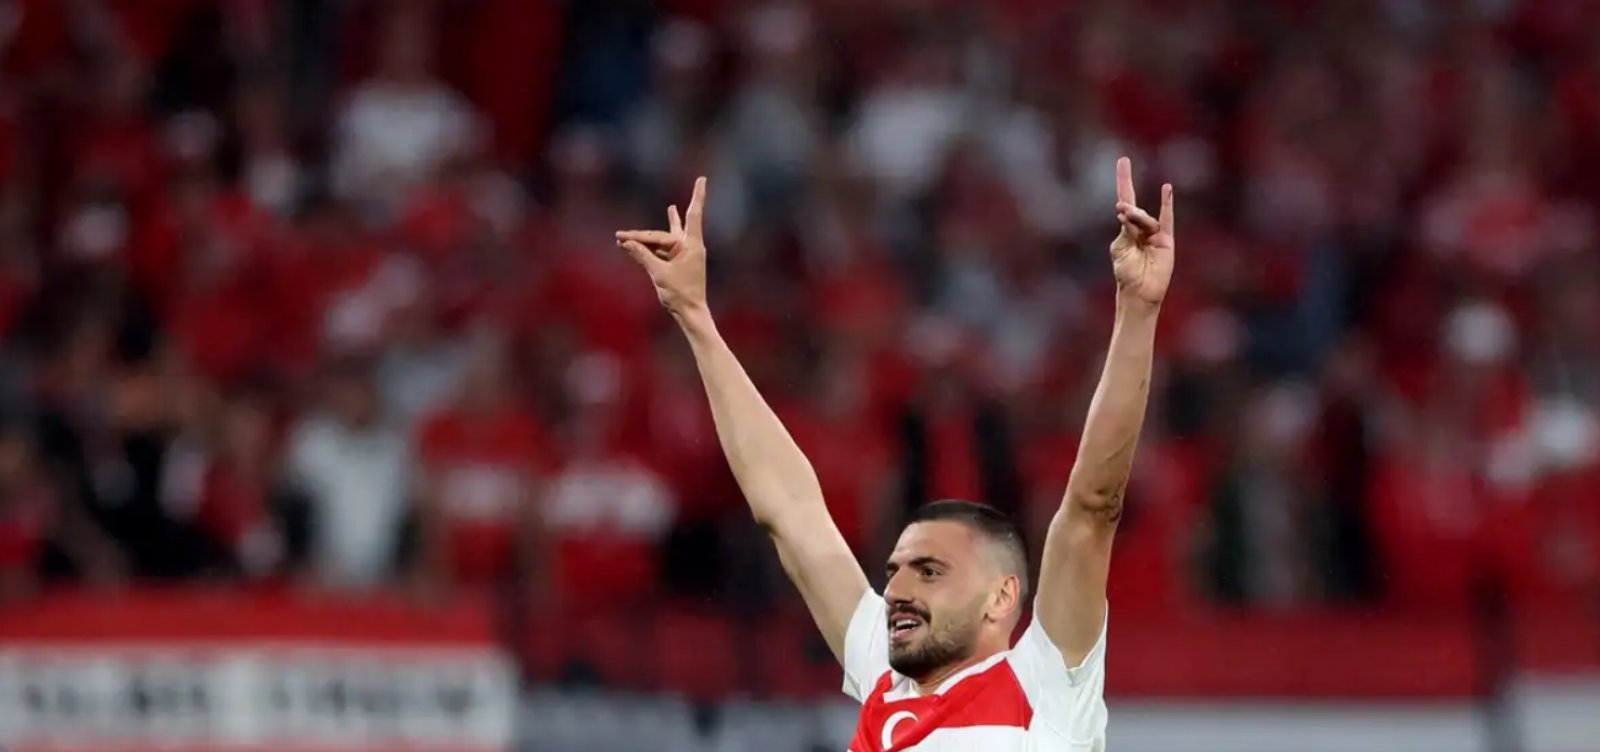  Zagueiro Merih Demiral é punido com dois jogos de suspensão após gesto fascista na Eurocopa